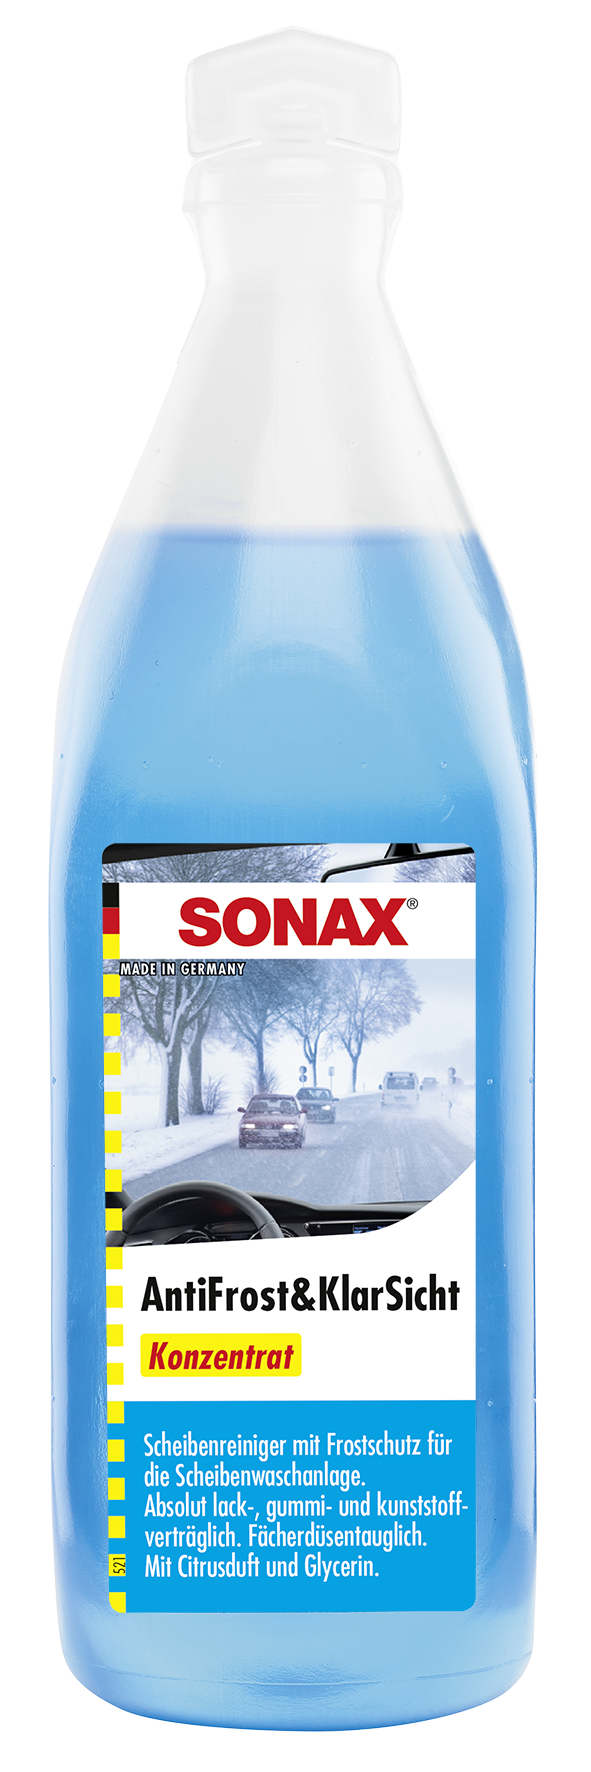 SONAX AntiFrost + KlarSicht Konzentrat 250 ml, Winter